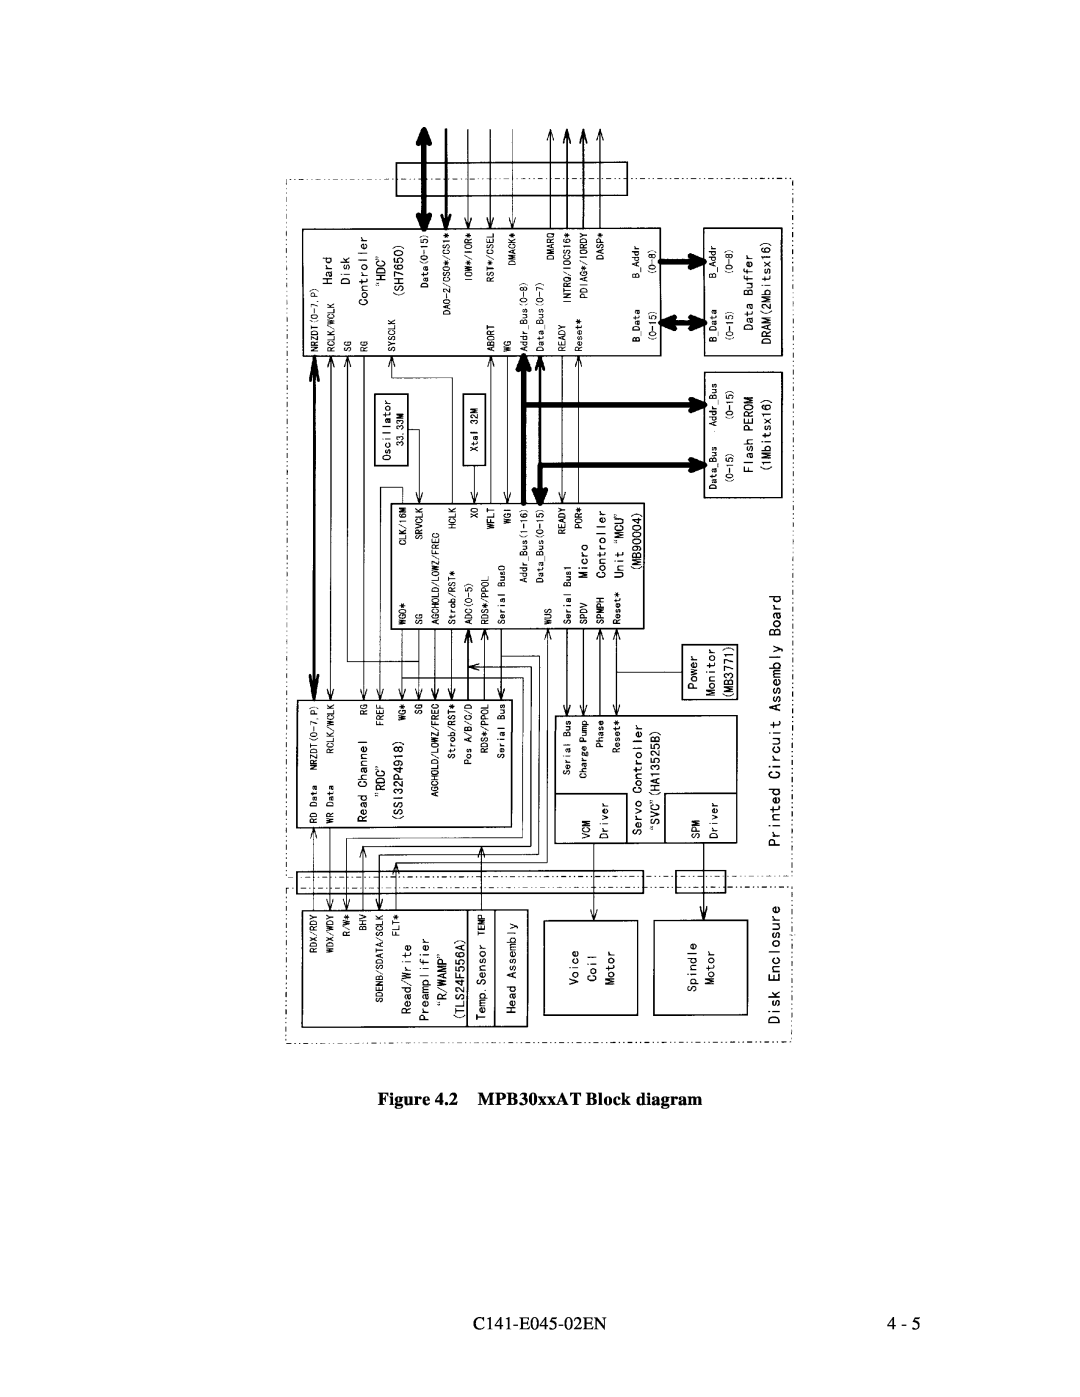 Fujitsu MPB3021AT, MPB3054AT, MPB3032AT, MPB3052AT, MPB3043AT manual 2 MPB30xxAT Block diagram, C141-E045-02EN 